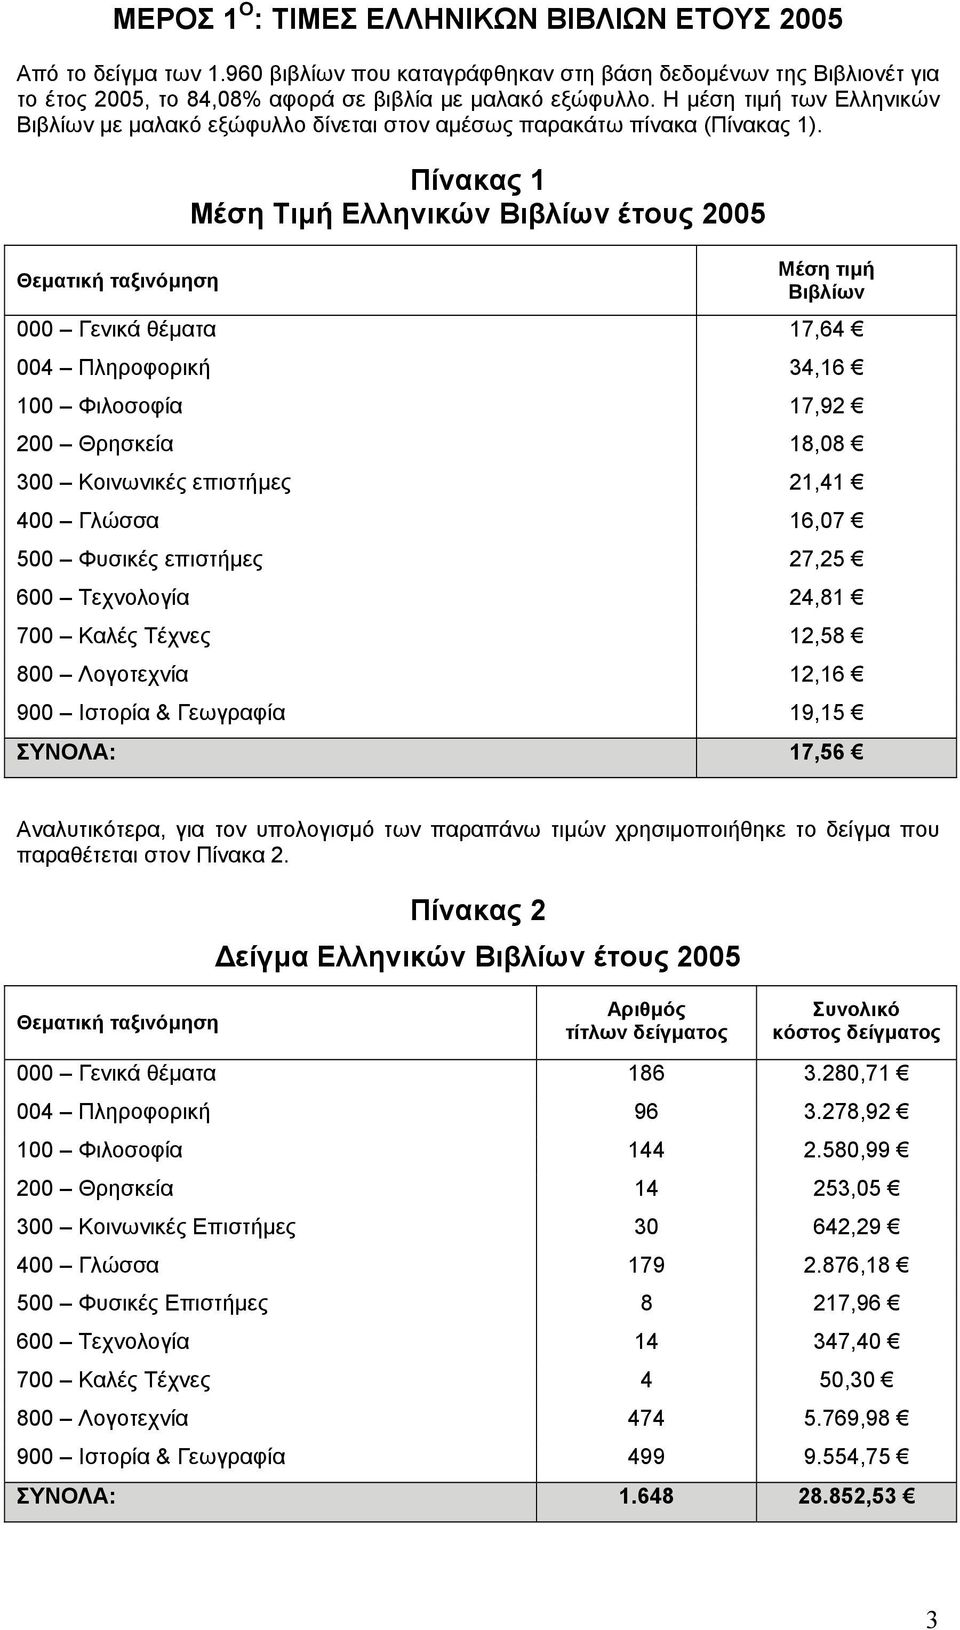 Θεµατική ταξινόµηση Πίνακας 1 Μέση Τιµή Ελληνικών Βιβλίων έτους 2005 Μέση τιµή Βιβλίων 000 Γενικά θέµατα 17,64 004 Πληροφορική 34,16 100 Φιλοσοφία 17,92 200 Θρησκεία 18,08 300 Κοινωνικές επιστήµες